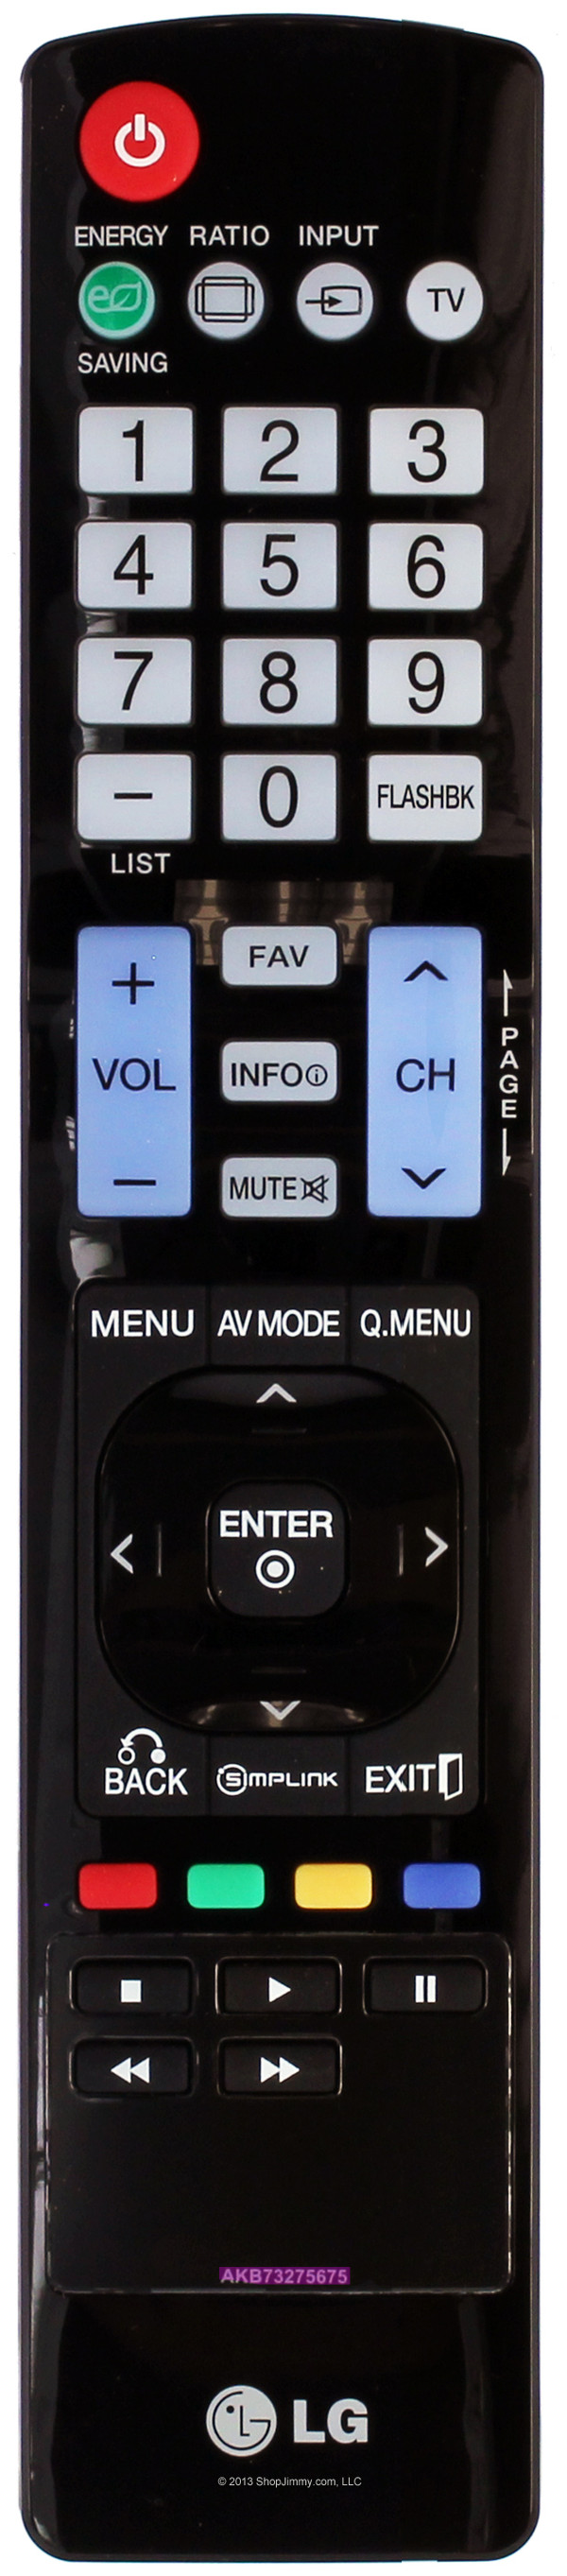 LG AKB73275675 Remote Control